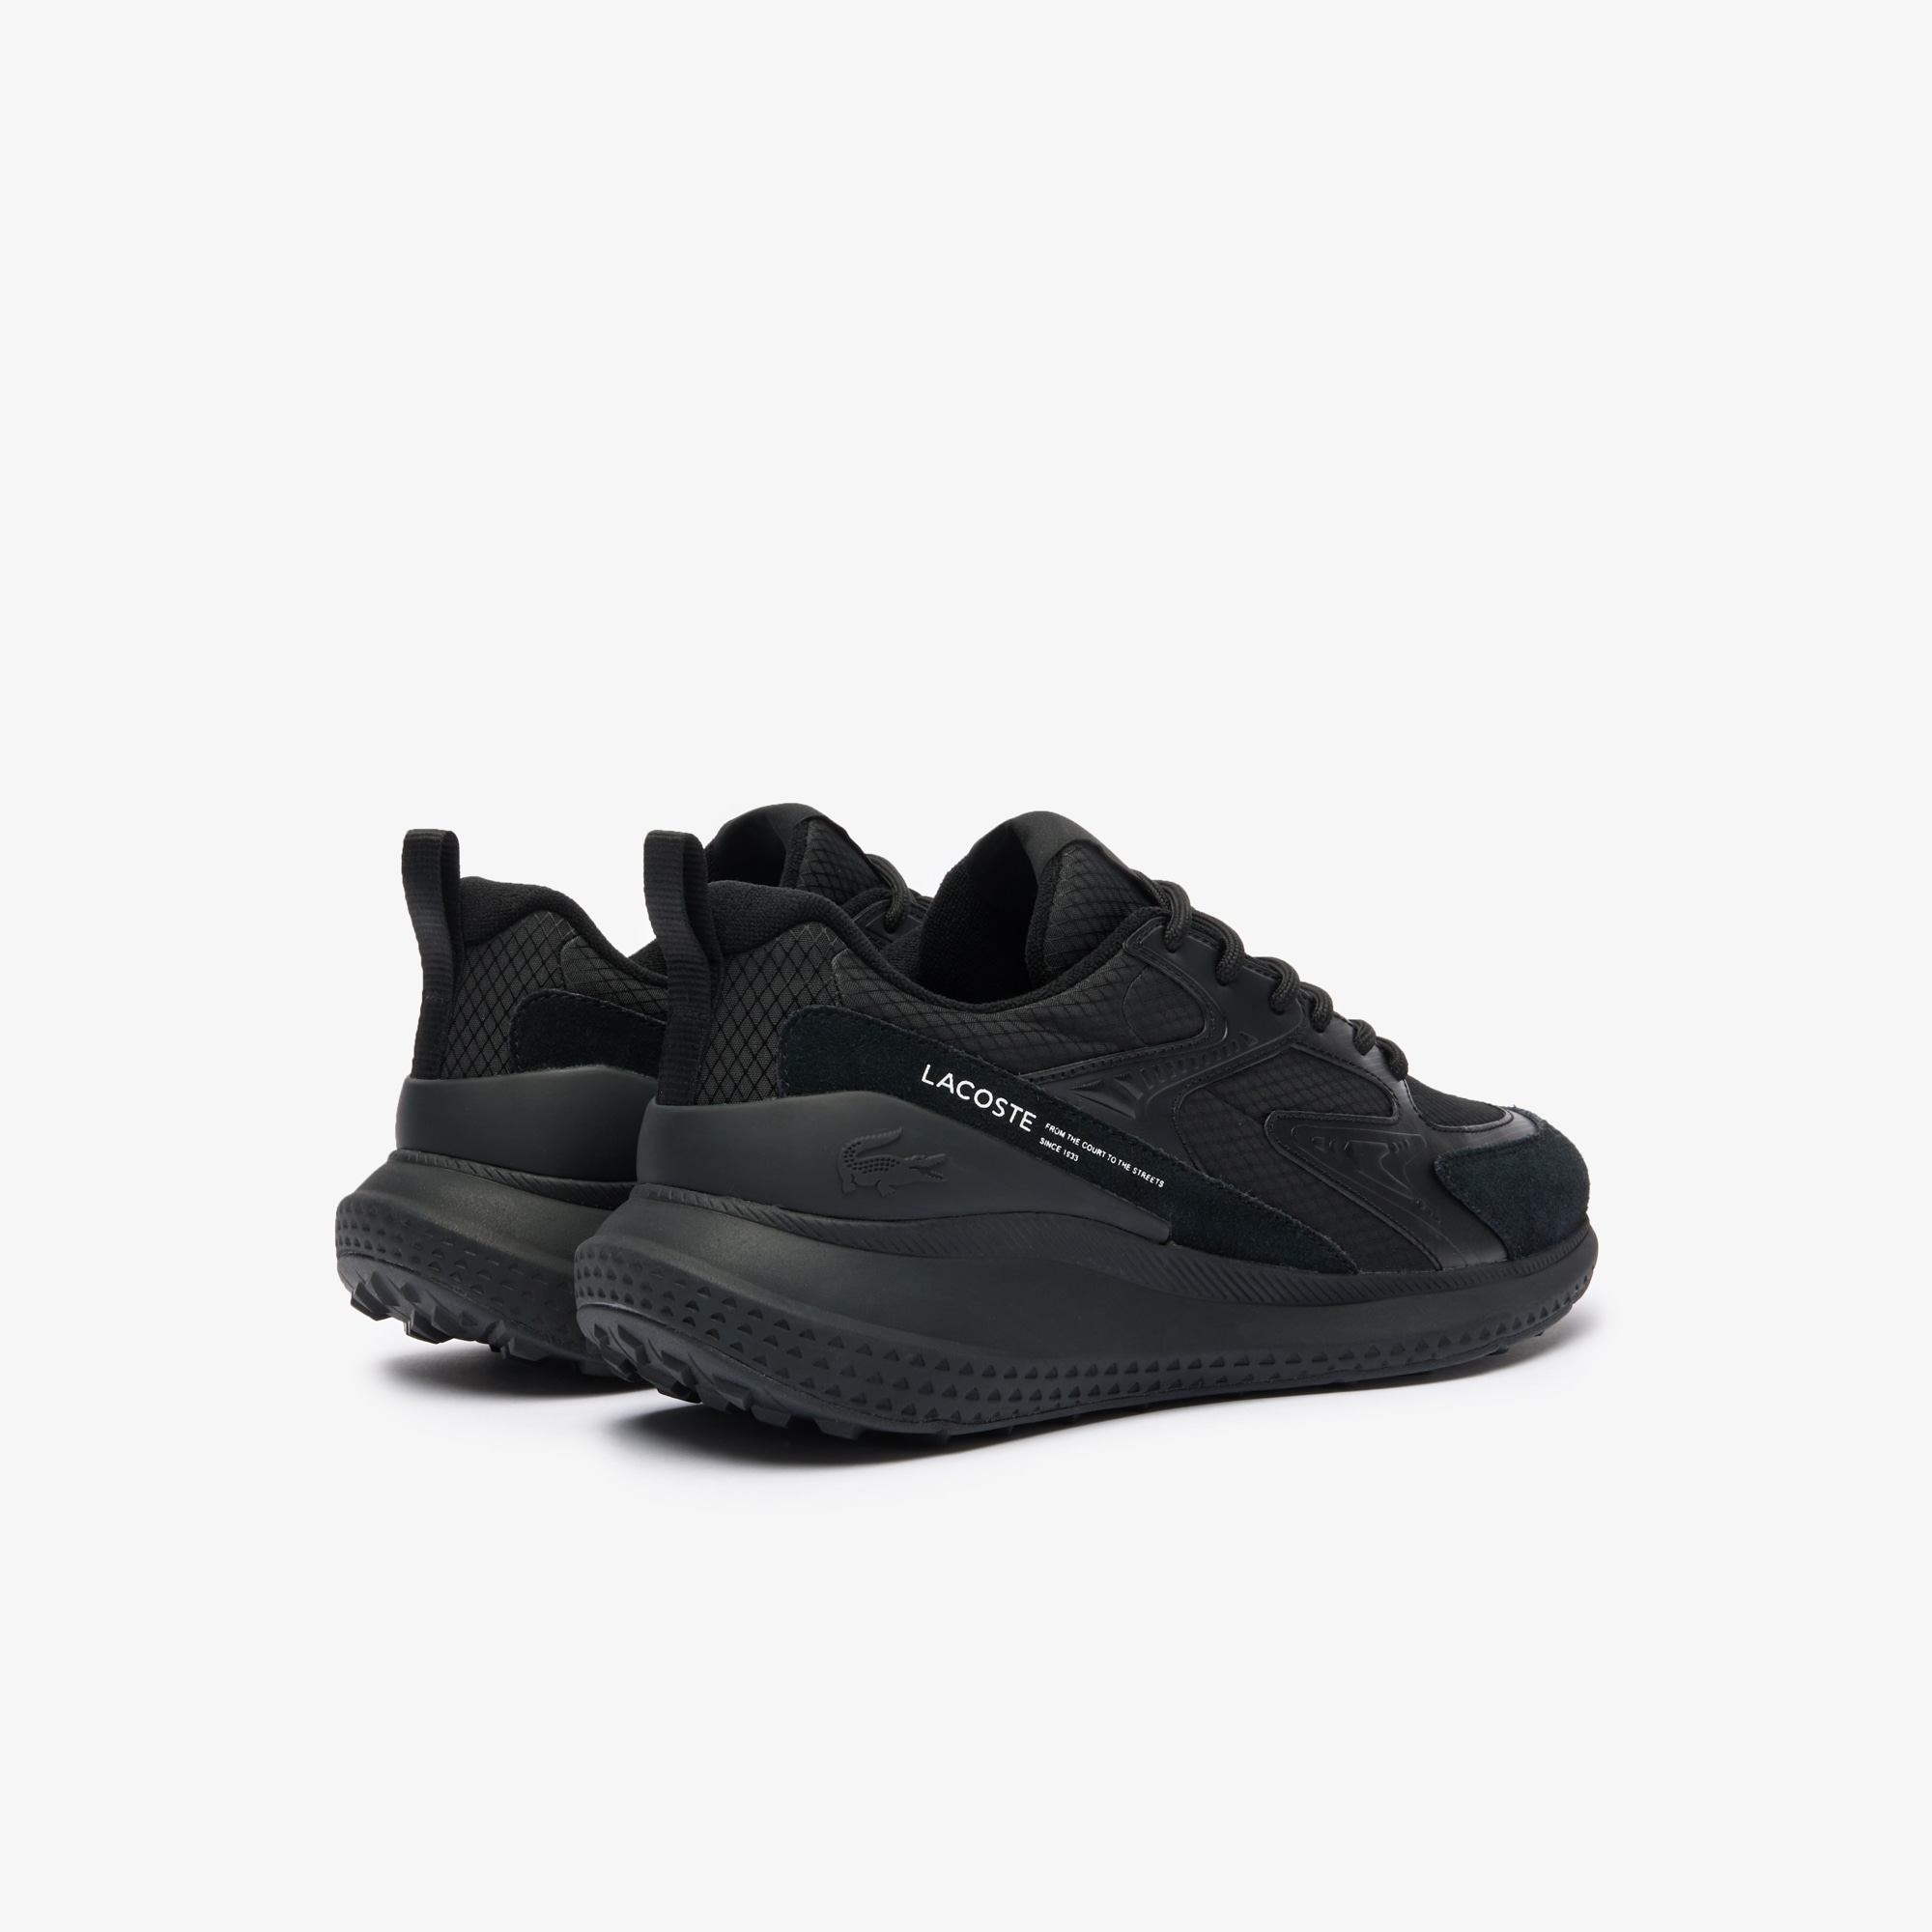 Lacoste Sneaker »L003 EVO 124 3 SMA«